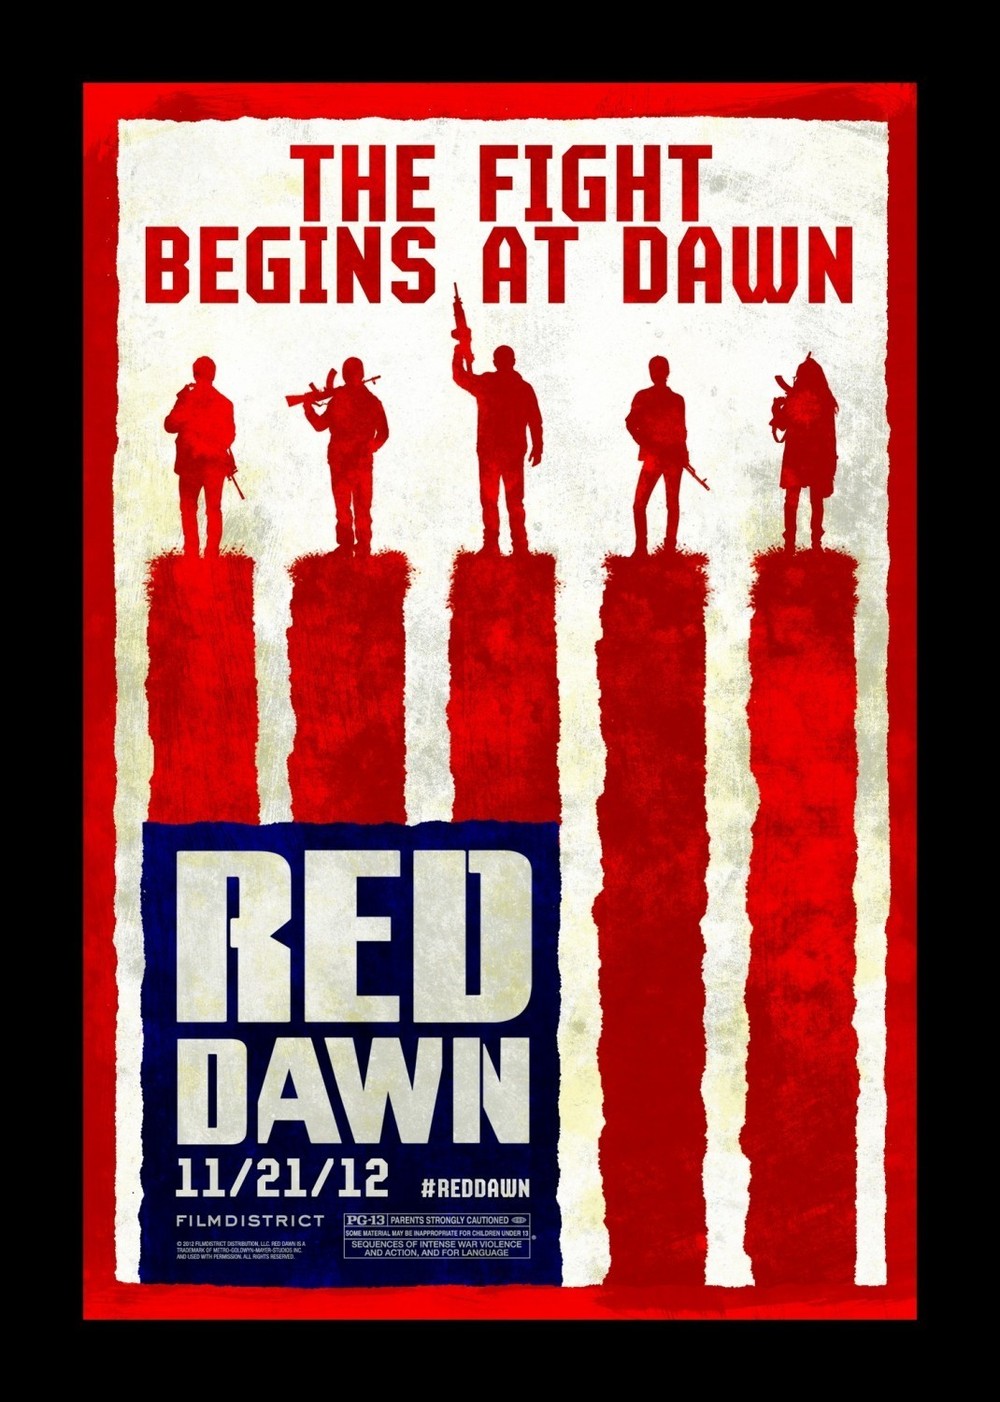 Red Dawn DVD Release Date | Redbox, Netflix, iTunes, Amazon